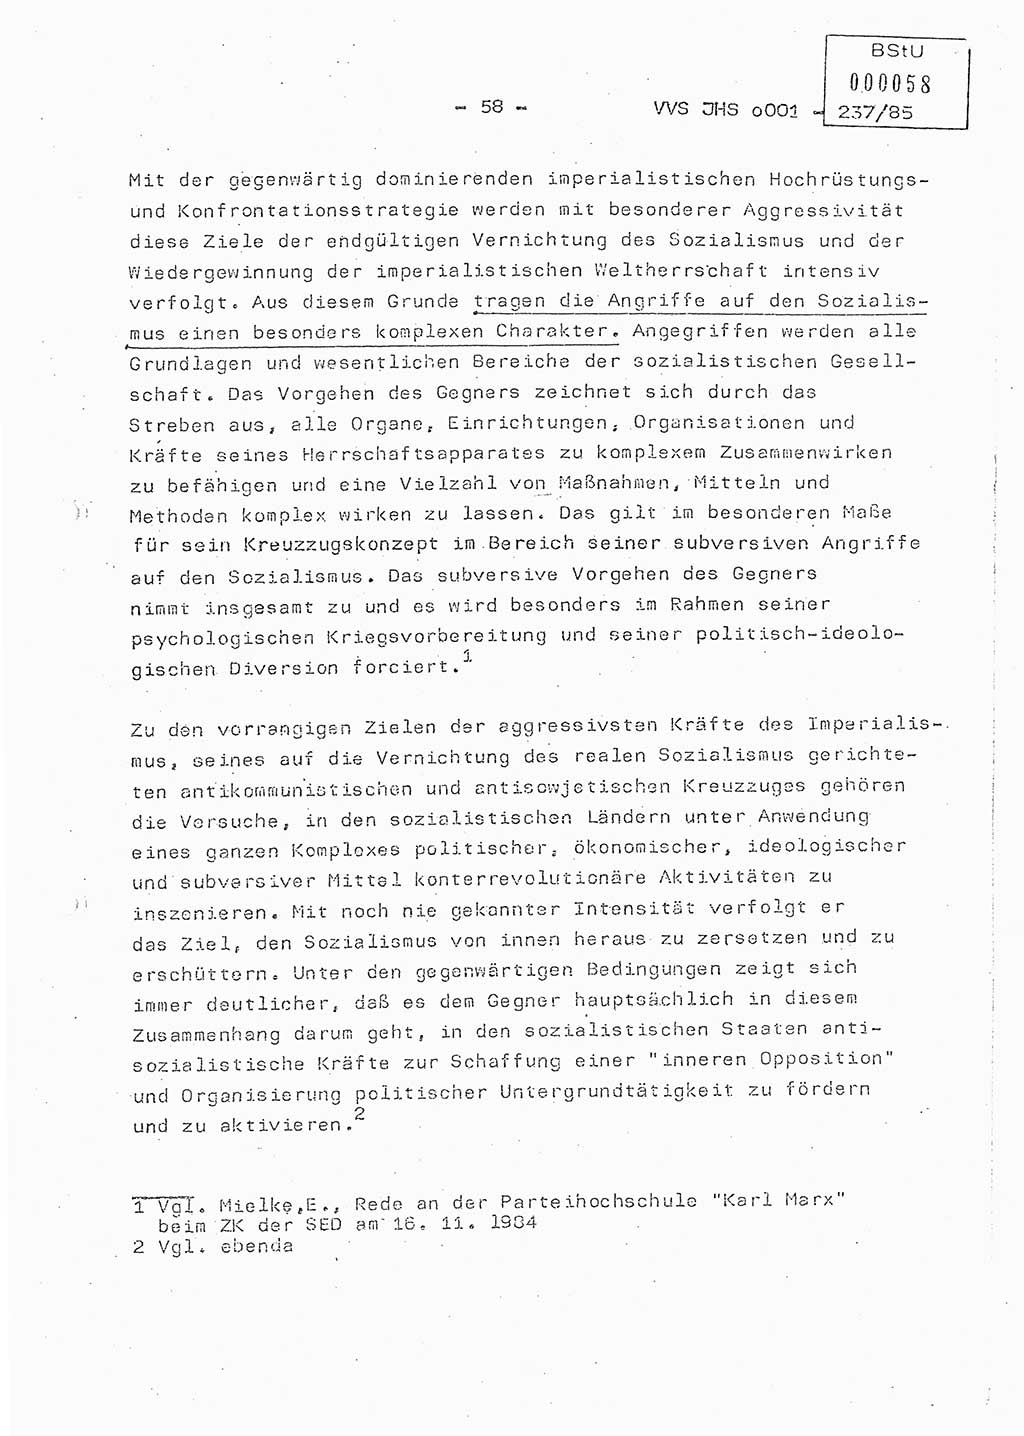 Dissertation Oberstleutnant Peter Jakulski (JHS), Oberstleutnat Christian Rudolph (HA Ⅸ), Major Horst Böttger (ZMD), Major Wolfgang Grüneberg (JHS), Major Albert Meutsch (JHS), Ministerium für Staatssicherheit (MfS) [Deutsche Demokratische Republik (DDR)], Juristische Hochschule (JHS), Vertrauliche Verschlußsache (VVS) o001-237/85, Potsdam 1985, Seite 58 (Diss. MfS DDR JHS VVS o001-237/85 1985, S. 58)